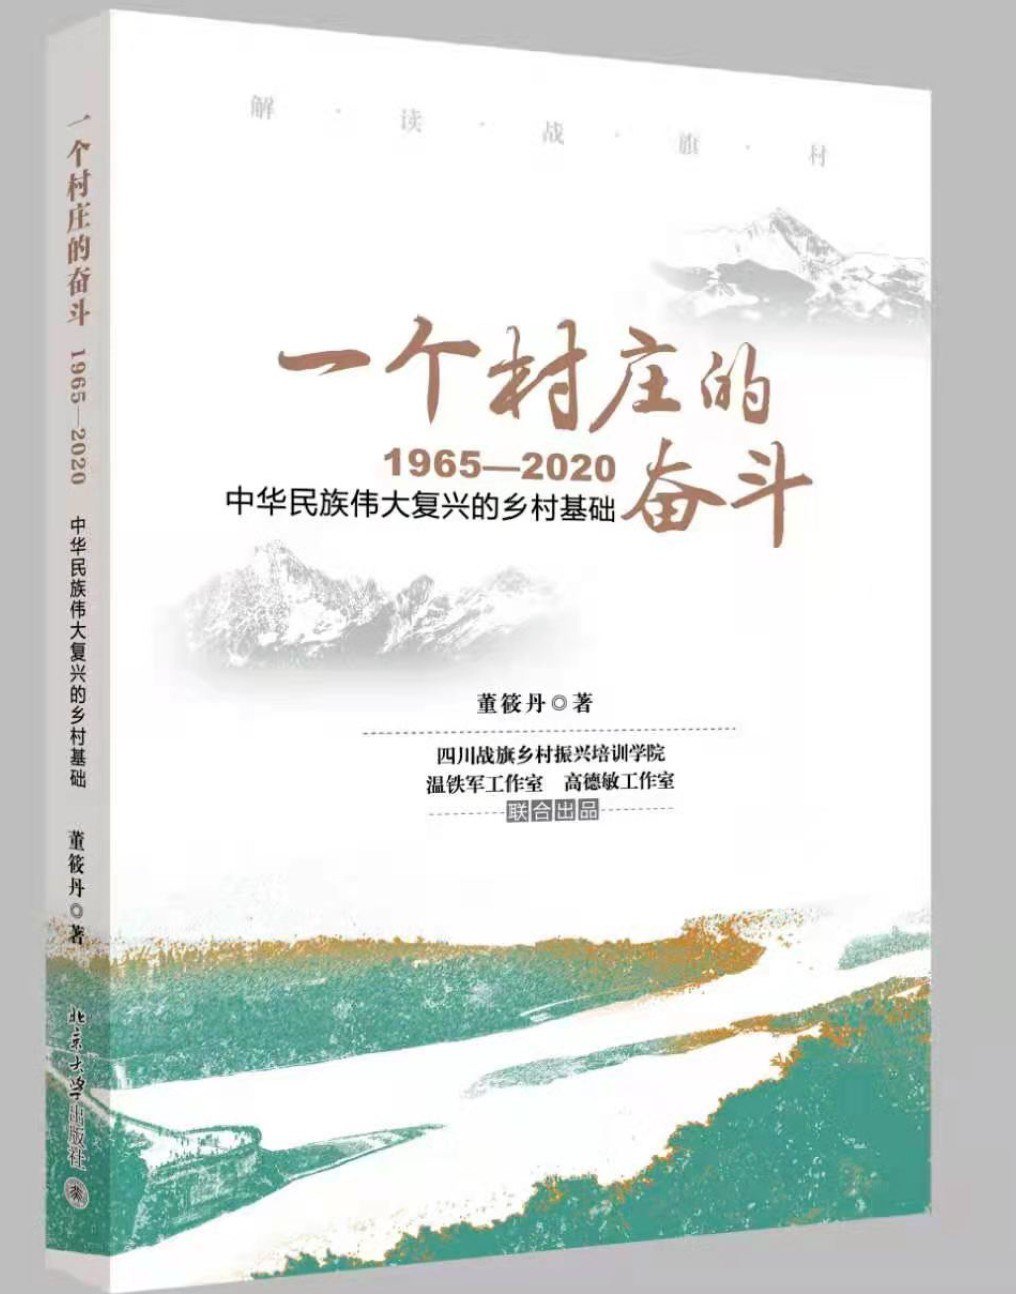 一个村庄的奋斗 1965-2020 中华民族伟大复兴的乡村基础